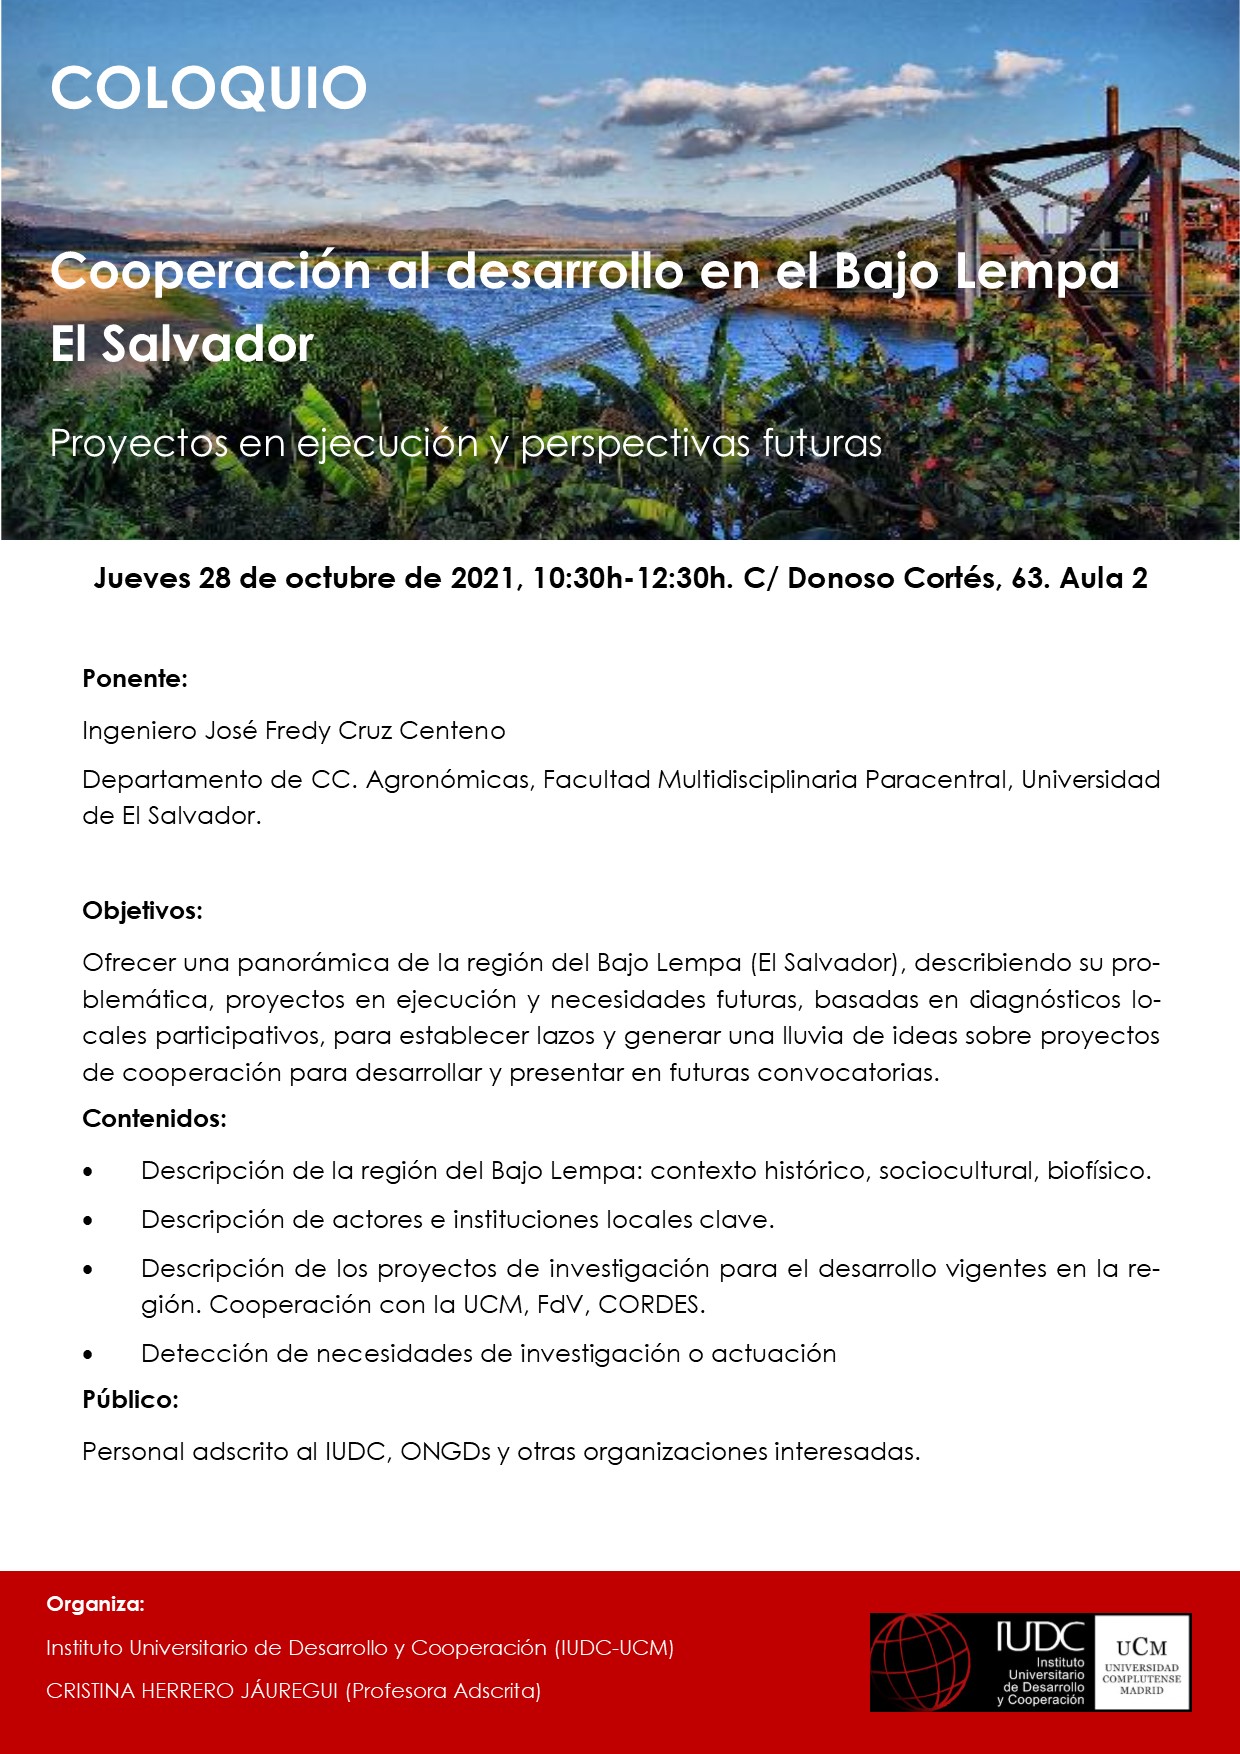 COLOQUIO. Cooperación al desarrollo en el Bajo Lempa El Salvador. Proyectos en ejecución y perspectivas futuras